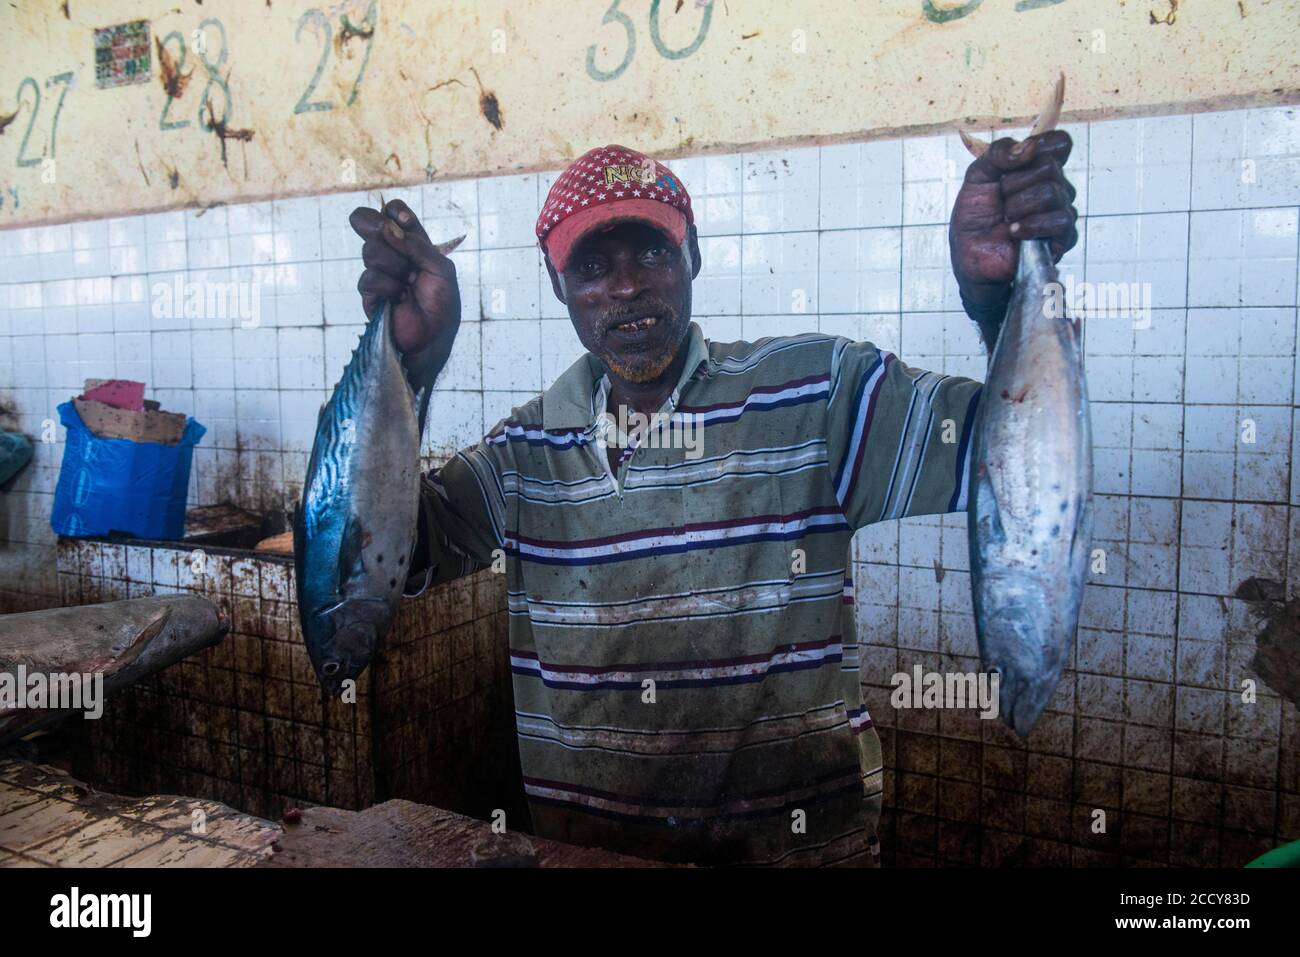 Somali man offering his fish in the Fishmarket, Mogadishu, Somalia Stock Photo